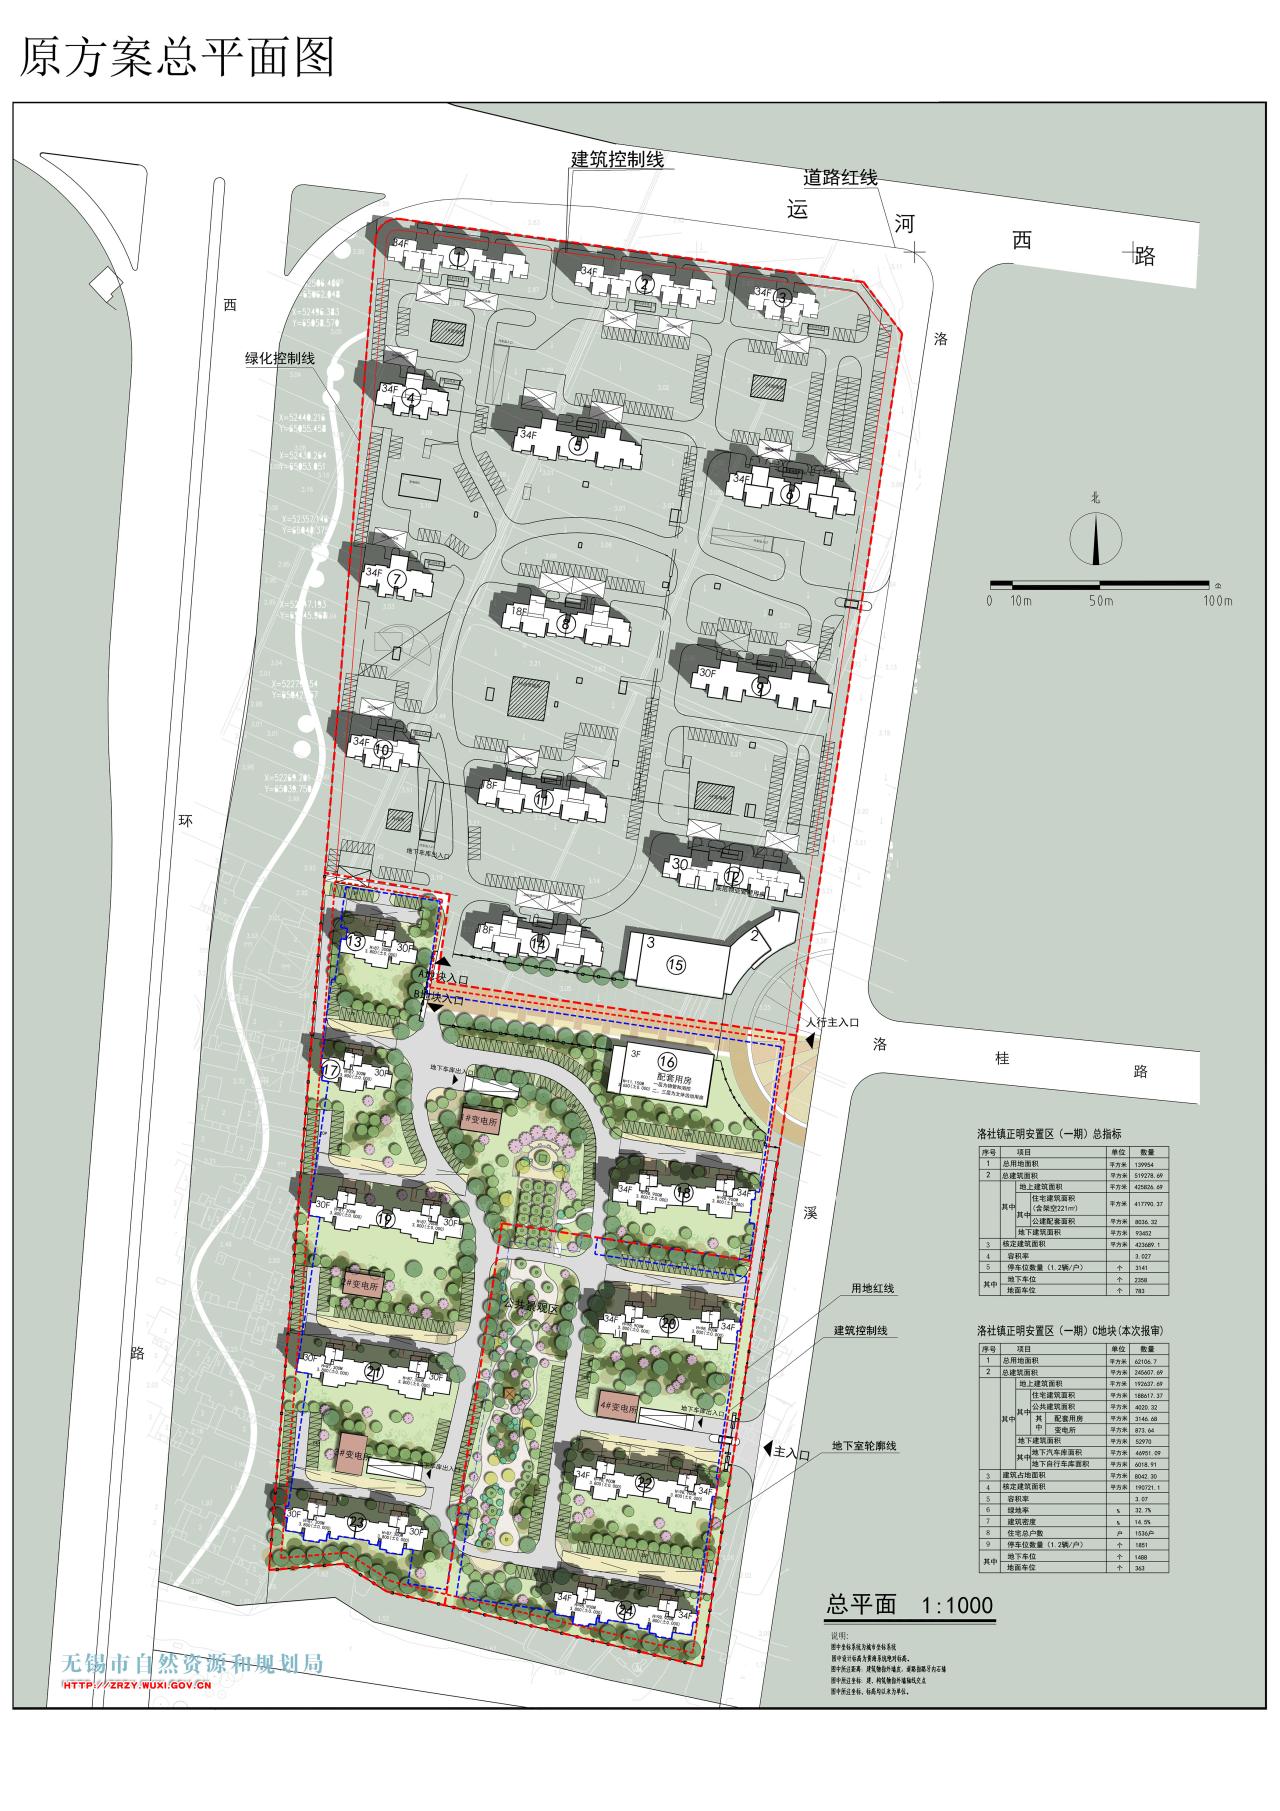 洛社镇正明安置区（一期）C地块工程规划设计方案（变更）审查批前公示